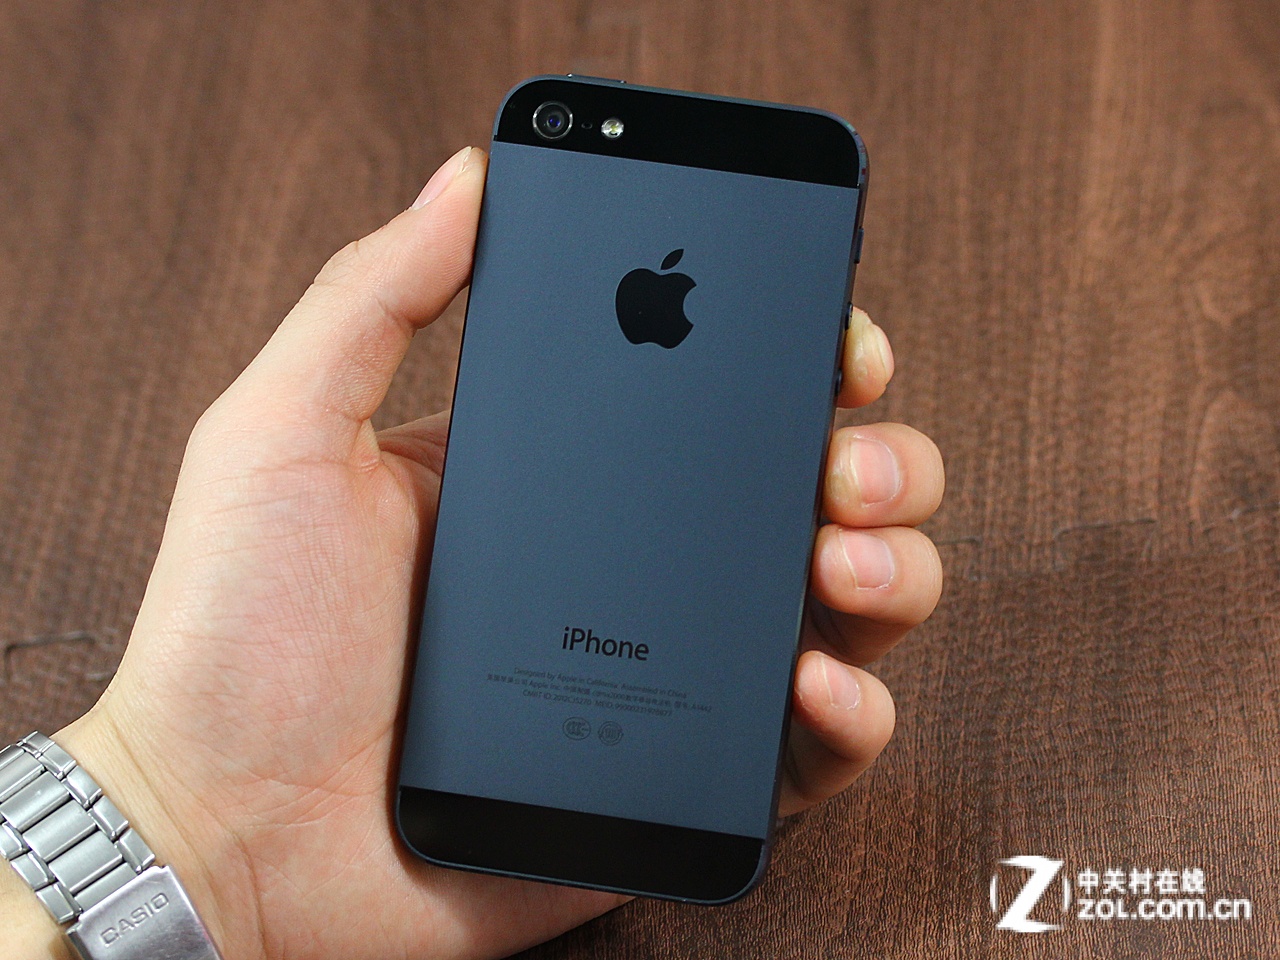 苹果金色iPhone 5S多图高清照片曝光(8张)图2